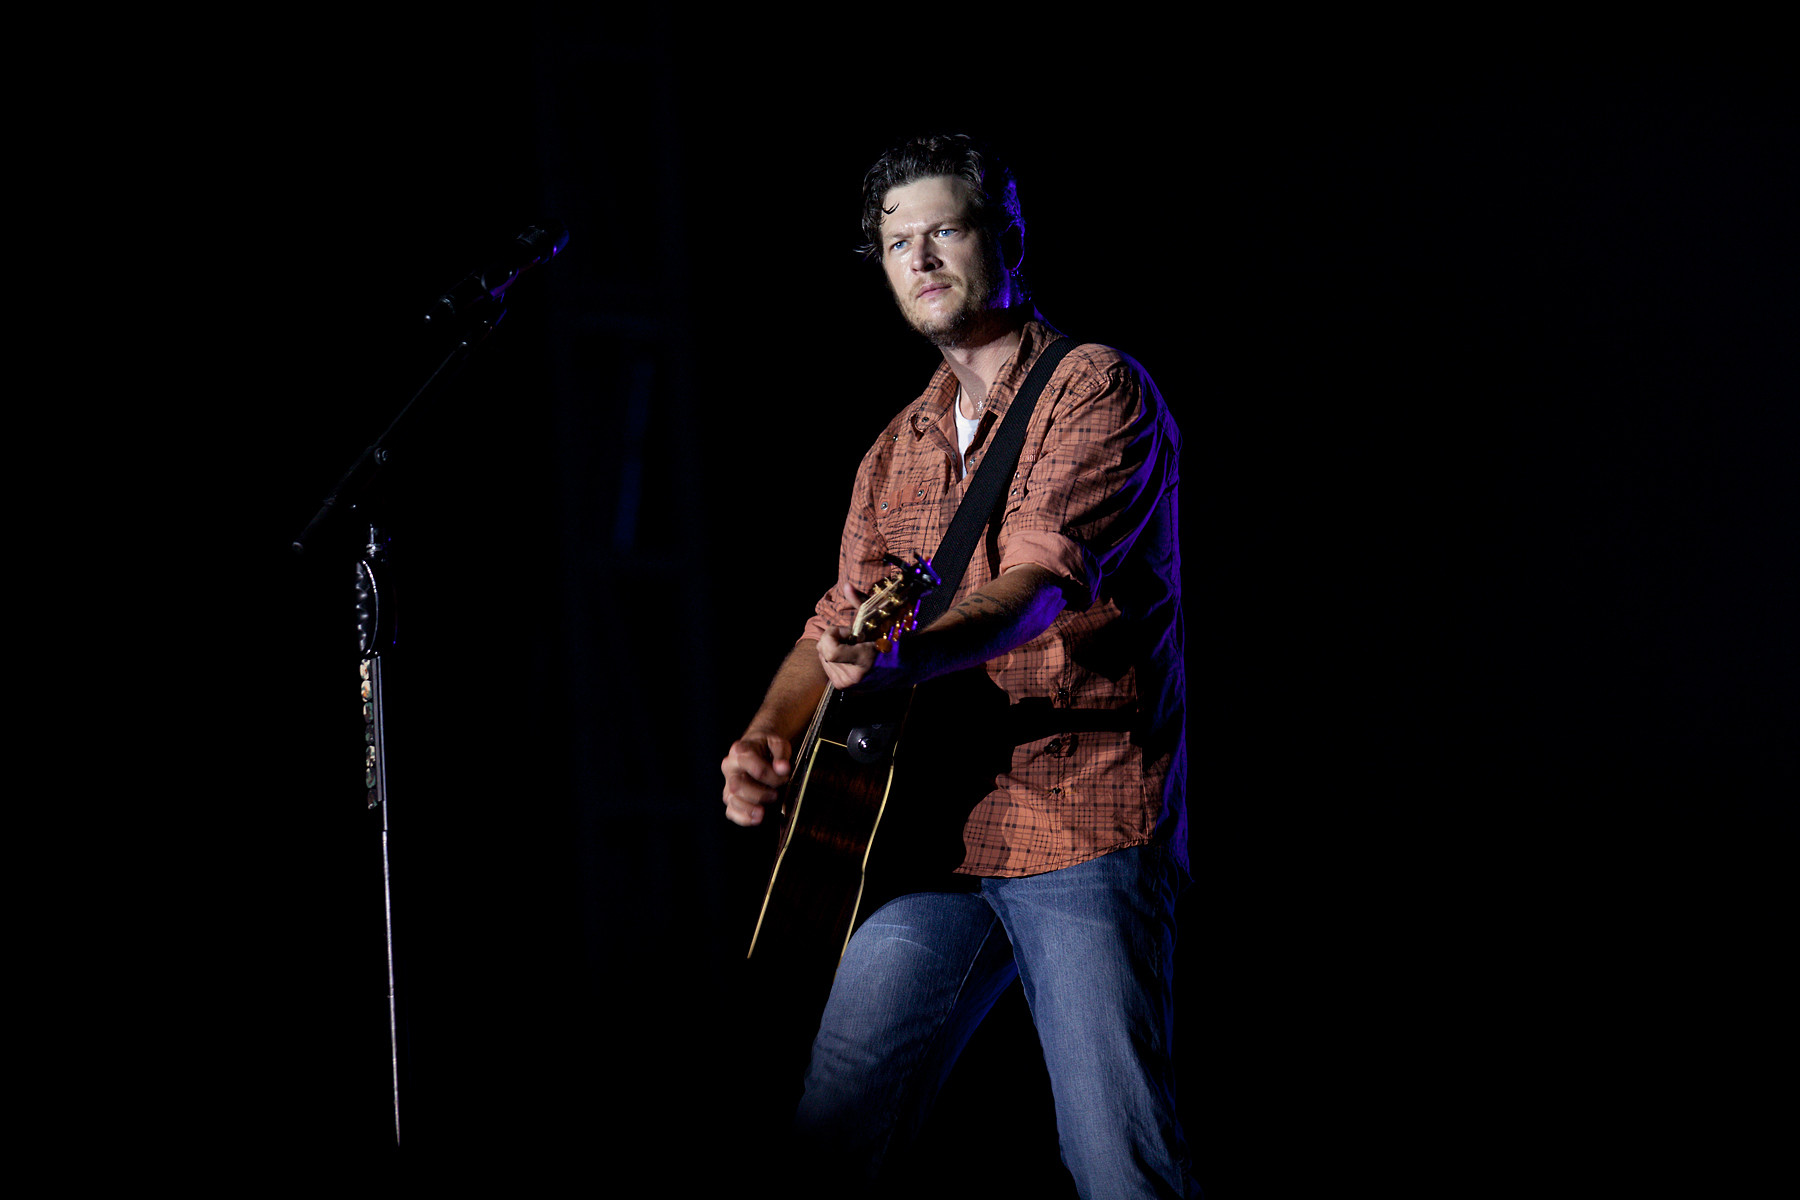 Blake Shelton @ CMT Music Festival 2011